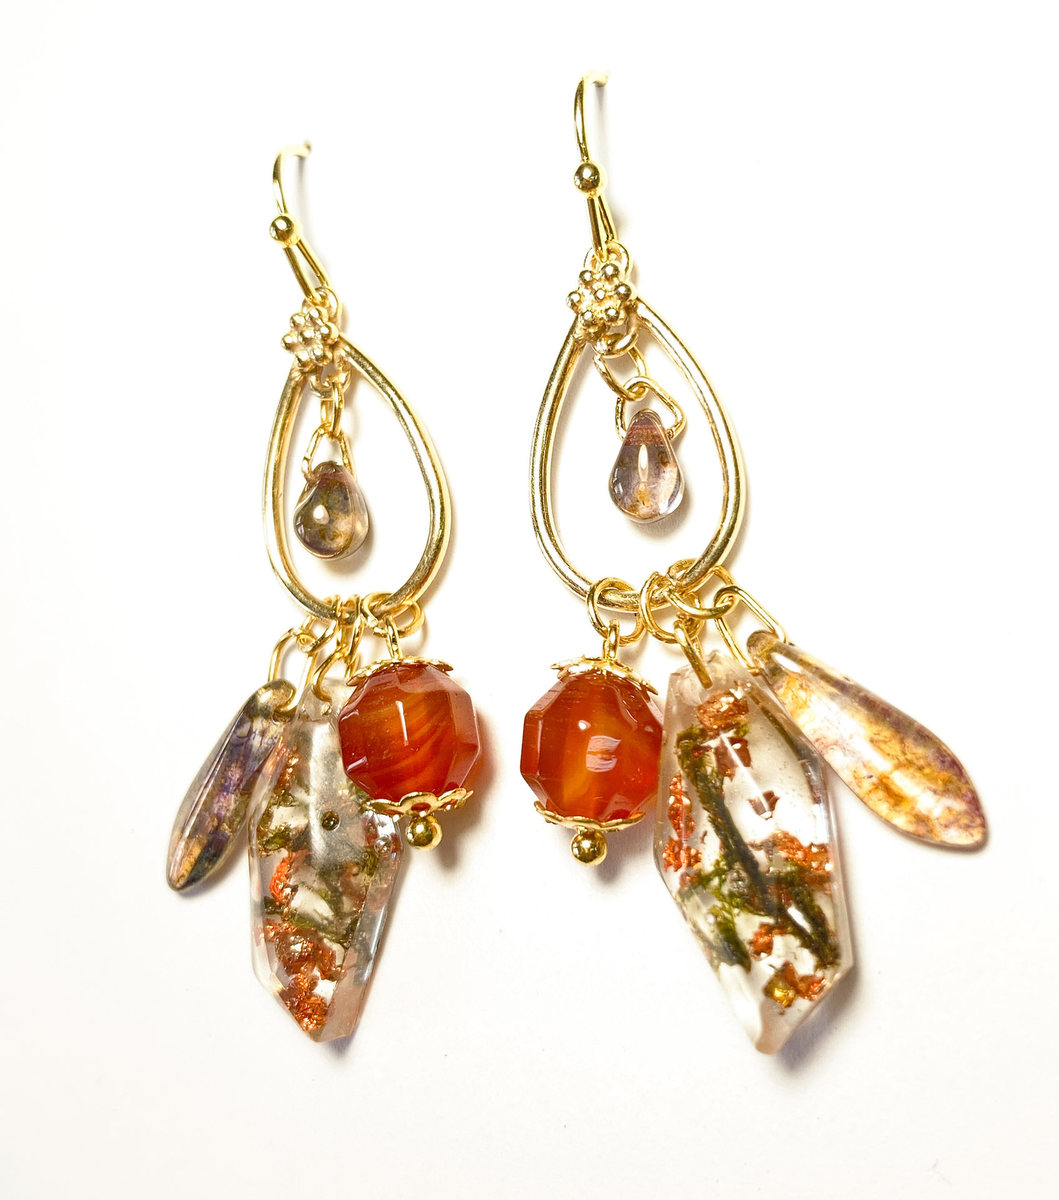 Carnelian orb earrings